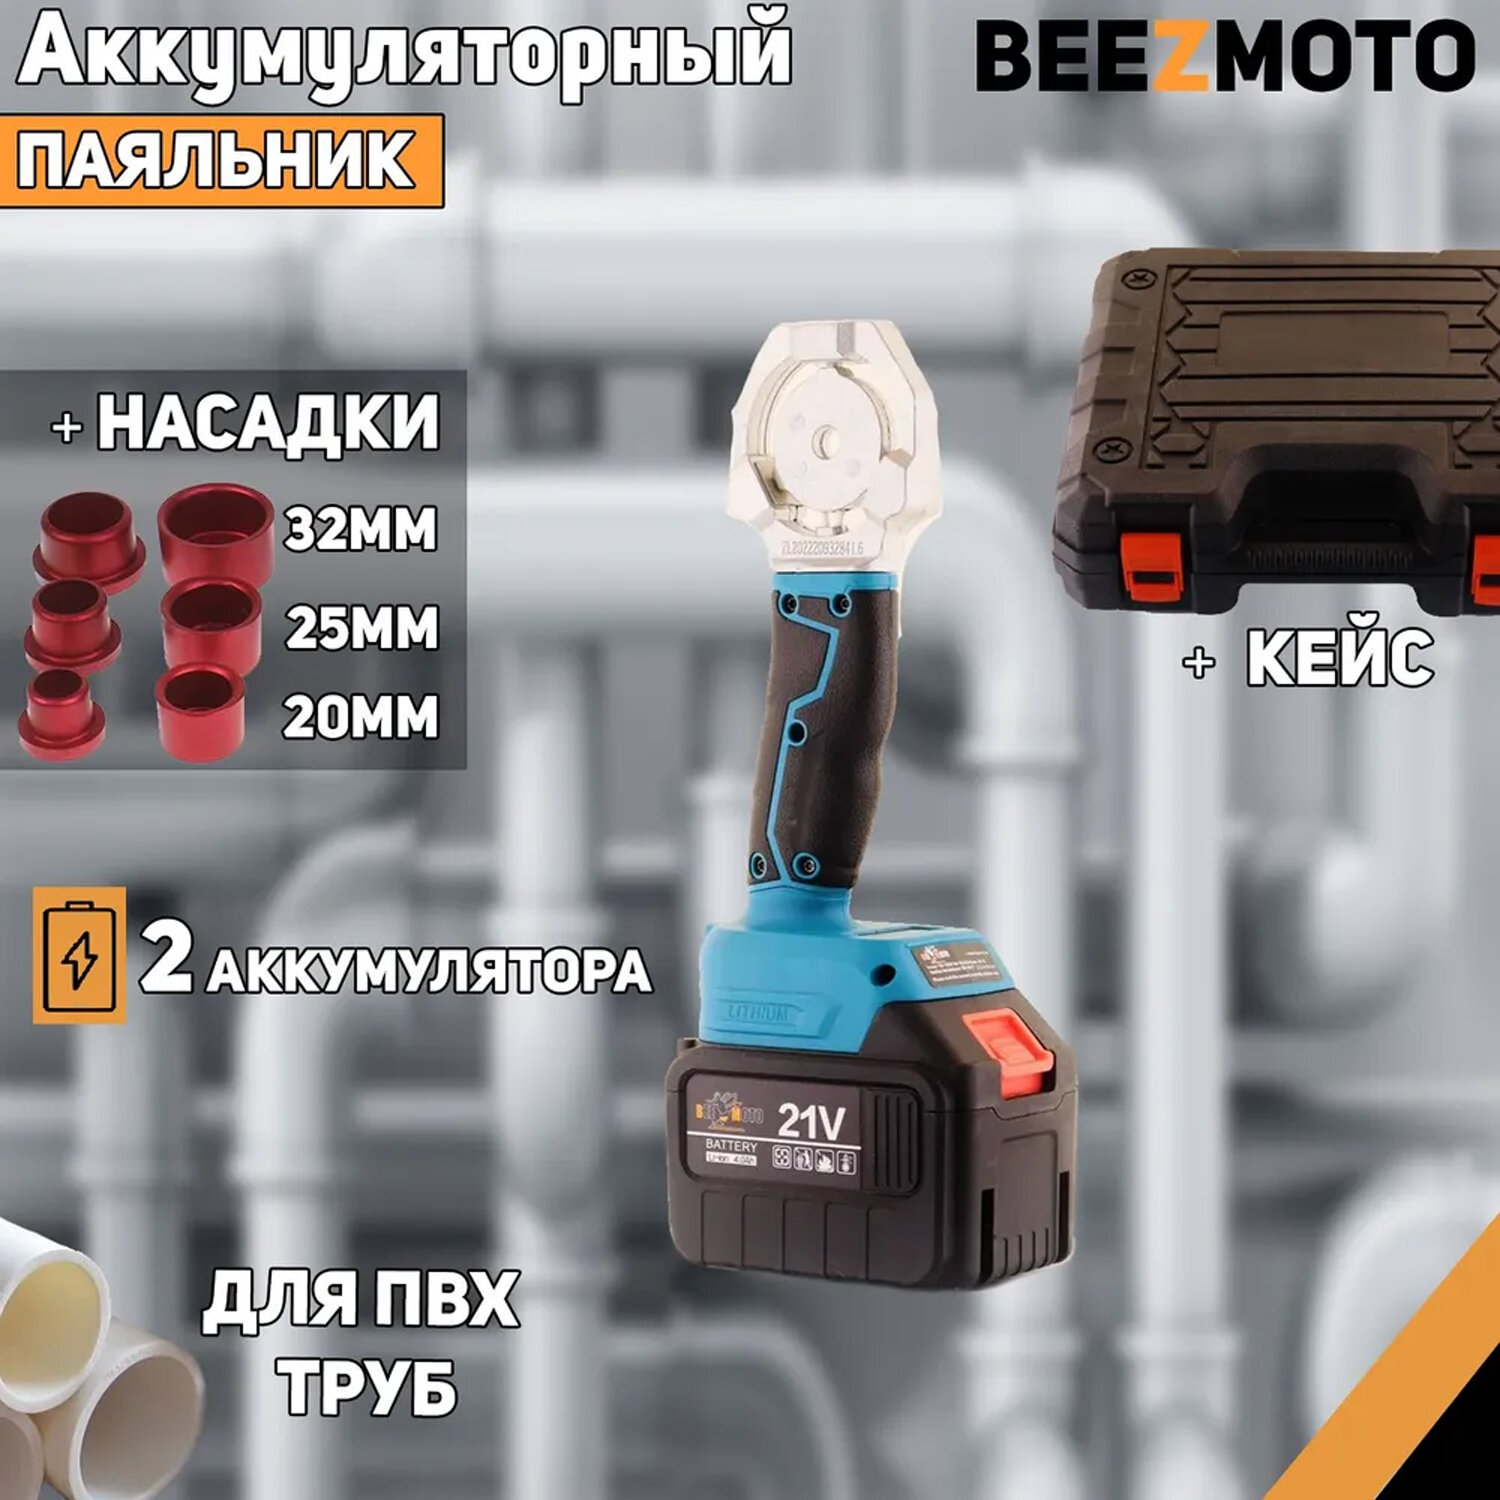 Аккумуляторный паяльник для ПВХ труб 21V (4Ah 2 акб ножницы насадки 20мм 25мм 32мм) "BEEZMOTO"